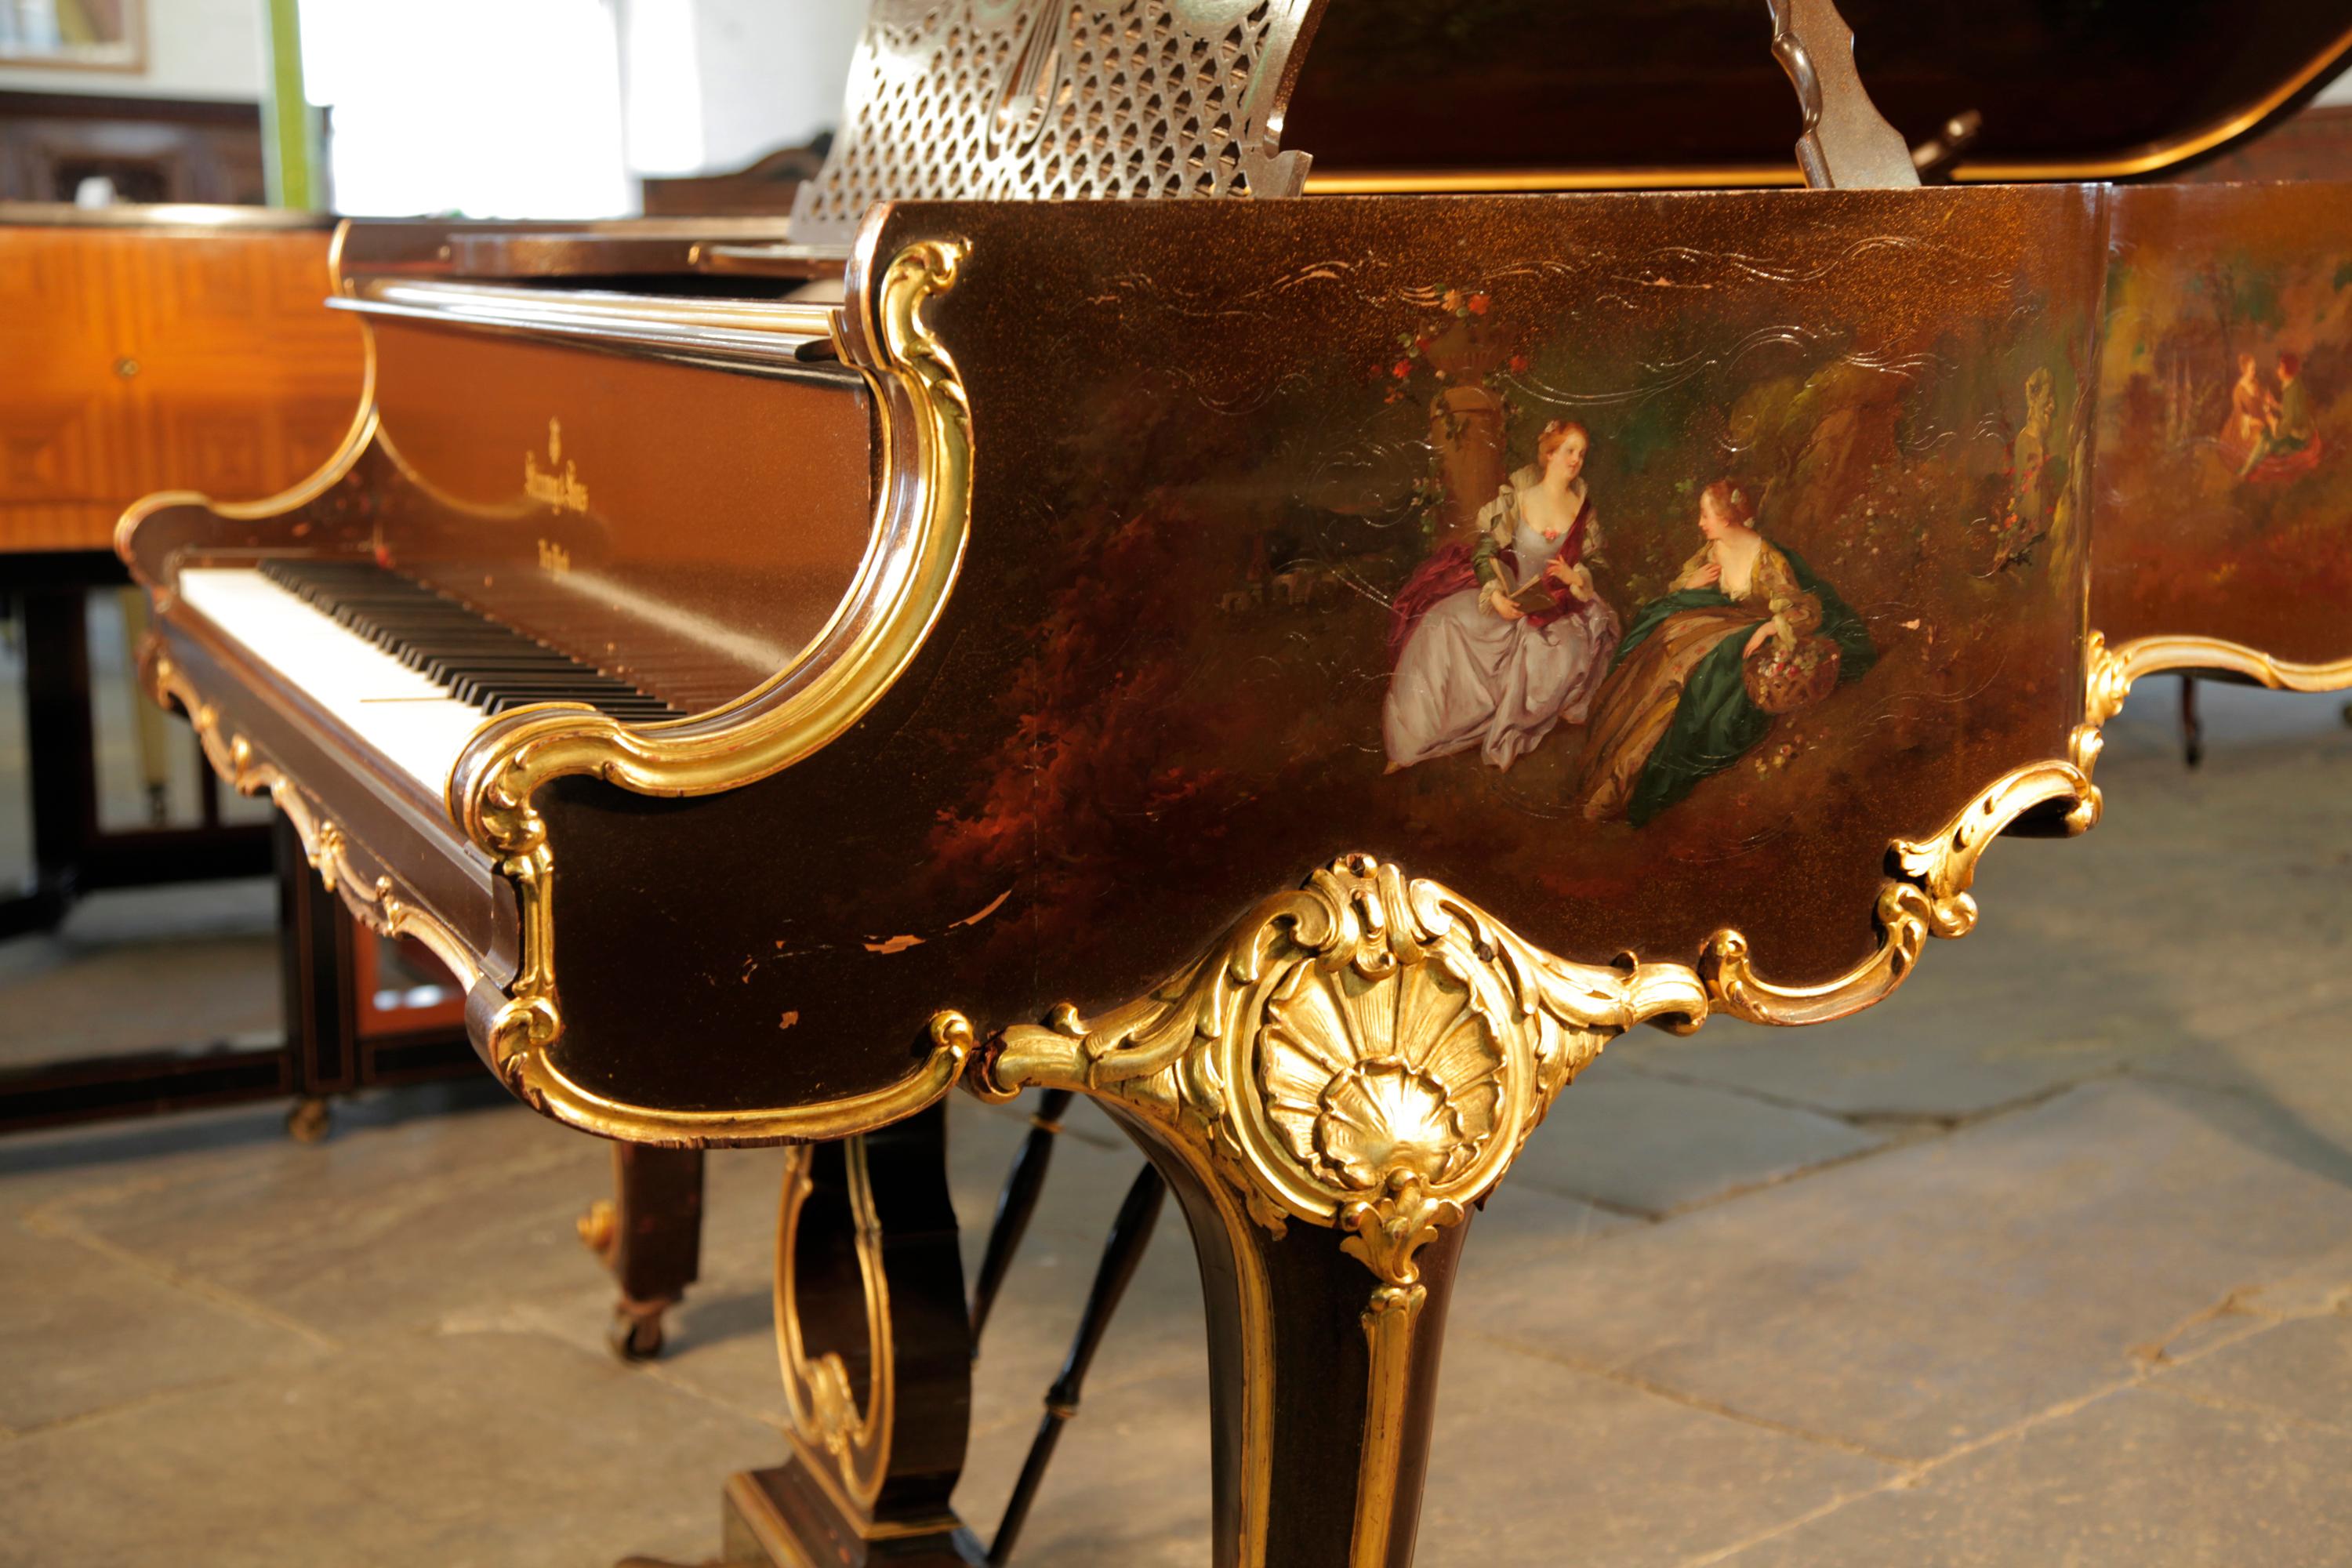 Style rococo, 1904, piano à queue Steinway modèle B.
Le pupitre est en treillis découpé avec un motif central de lyre décoré de guirlandes drapées.
La lyre de piano à trois pédales avec repose-pieds en laiton présente un motif d'acanthe en forme